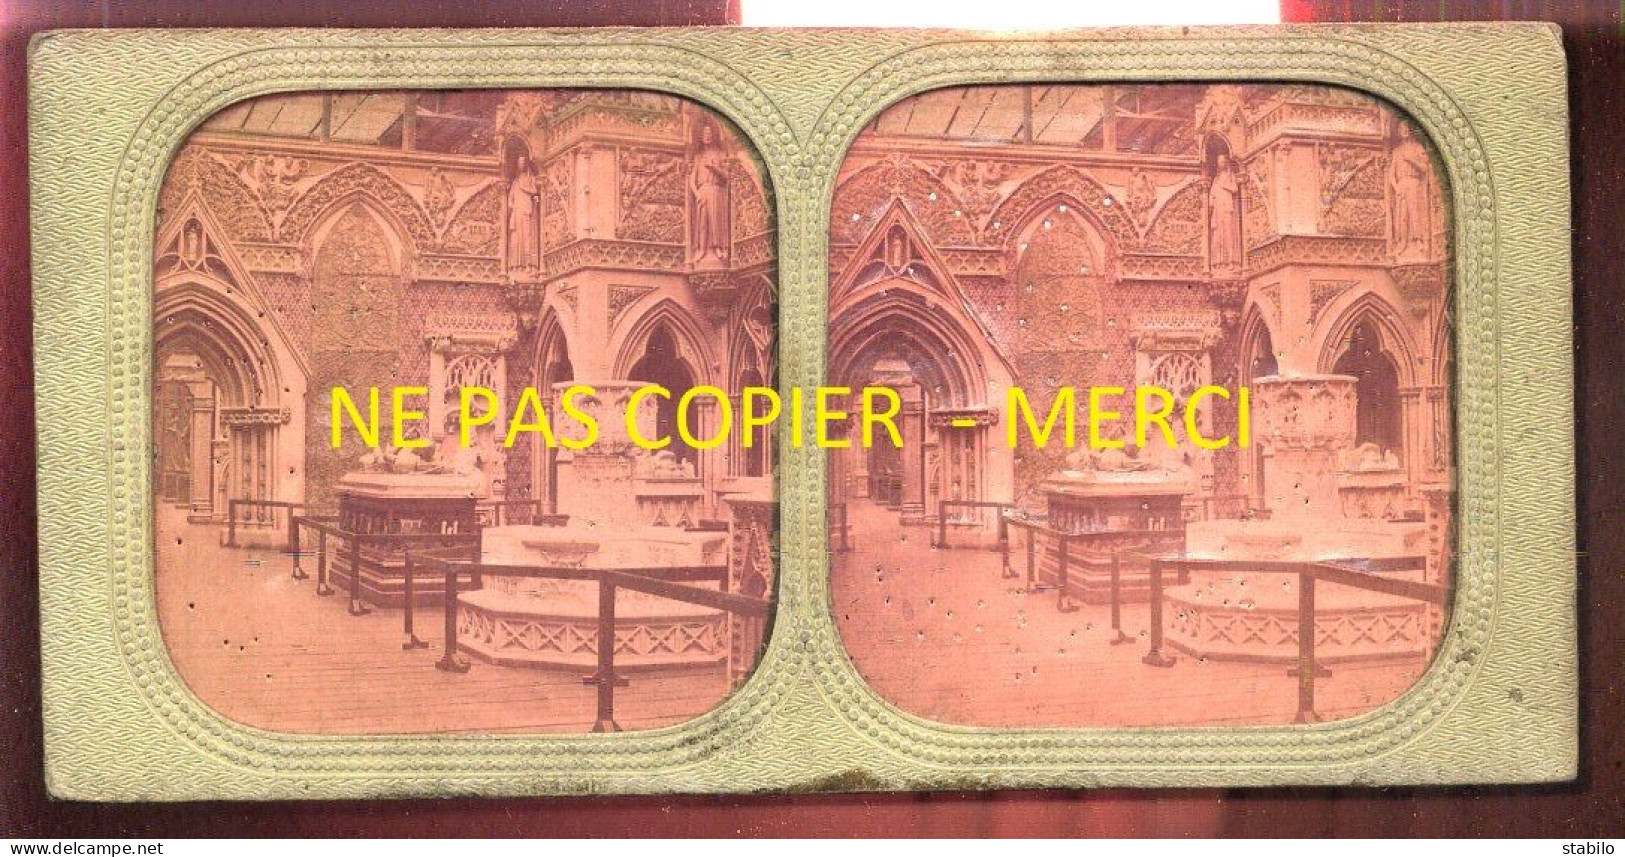 PHOTO STEREO CIRCA 1860 - TRANSPARENTE - MUSEE DE SCULPTURES - FORMAT 17.5 X 8.5 CM - VOIR ETAT - Stereoscopic